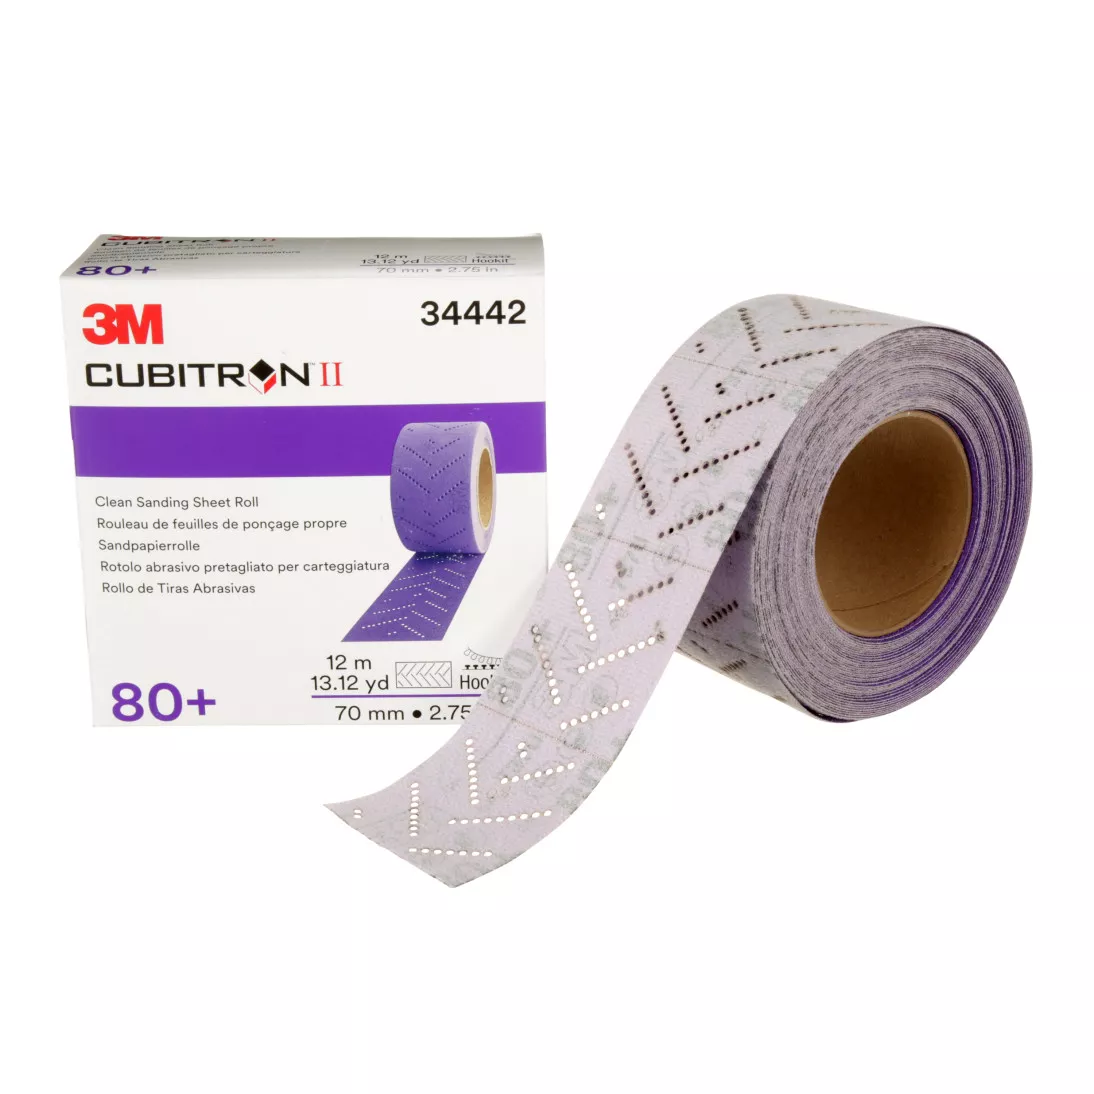 3M™ Cubitron™ II Hookit™ Clean Sanding Sheet Roll, 34442, 80+ grade, 70
mm x 12 m, 5 rolls per case